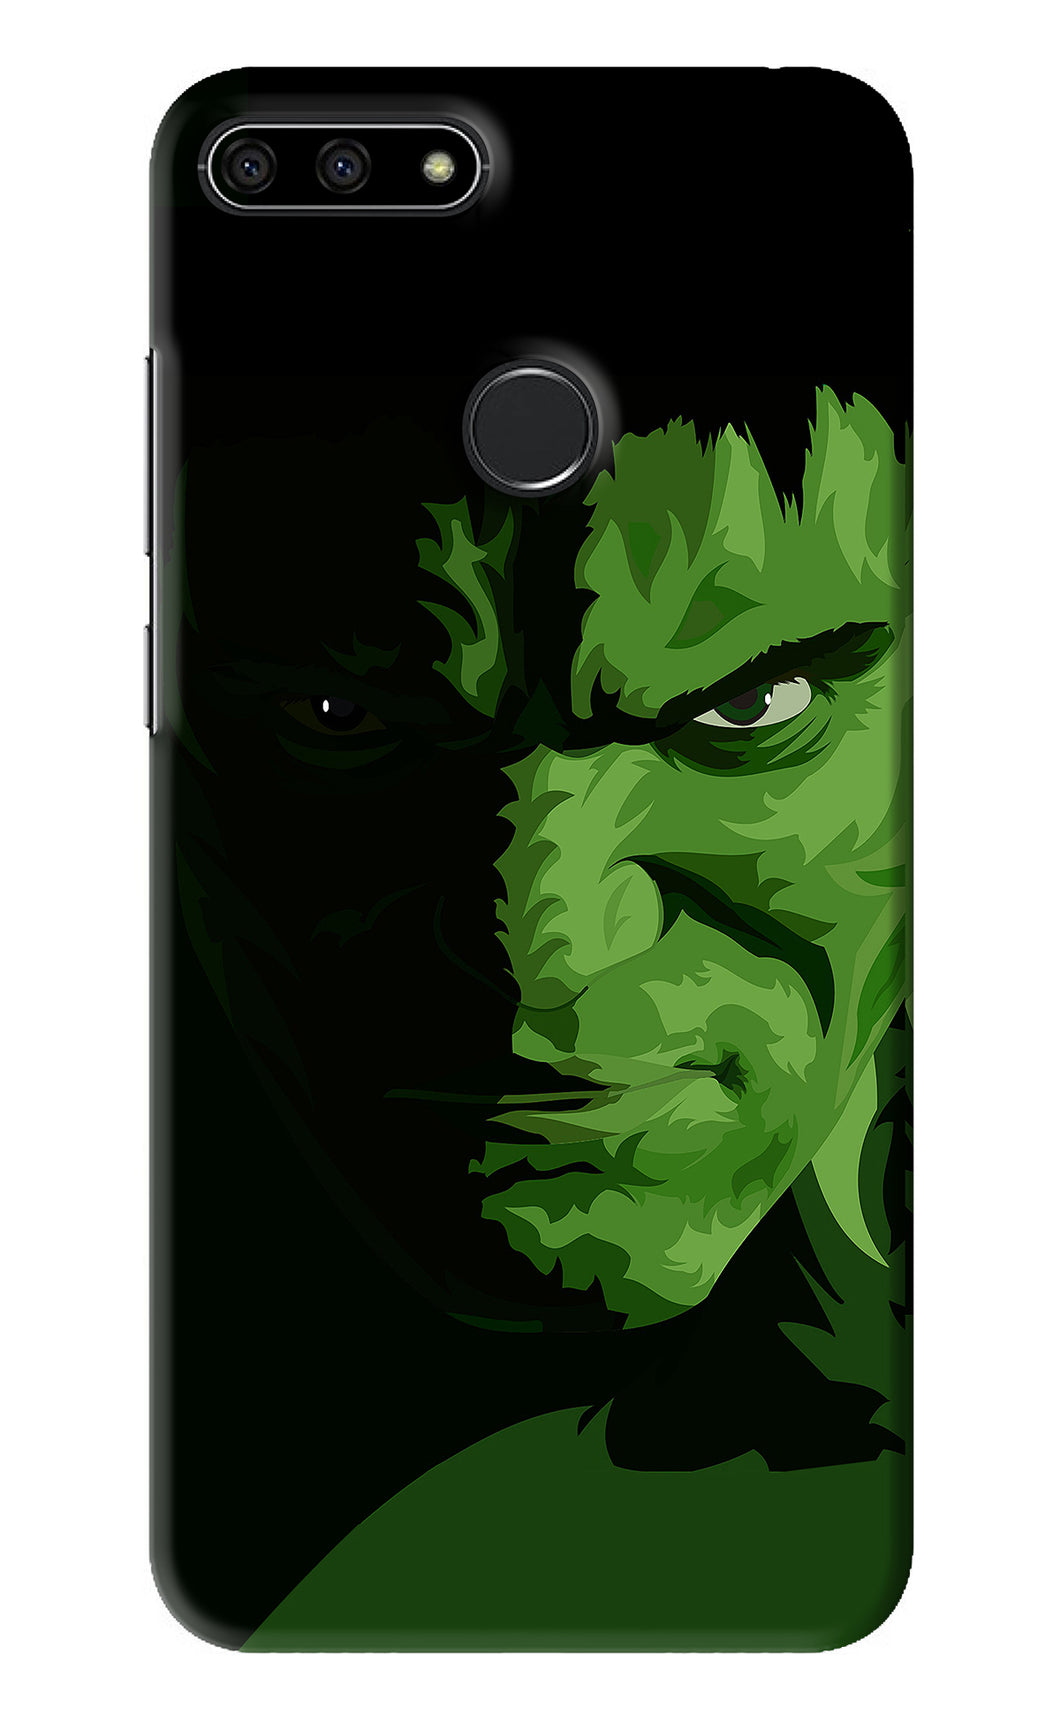 Hulk Huawei Honor 7A Back Skin Wrap